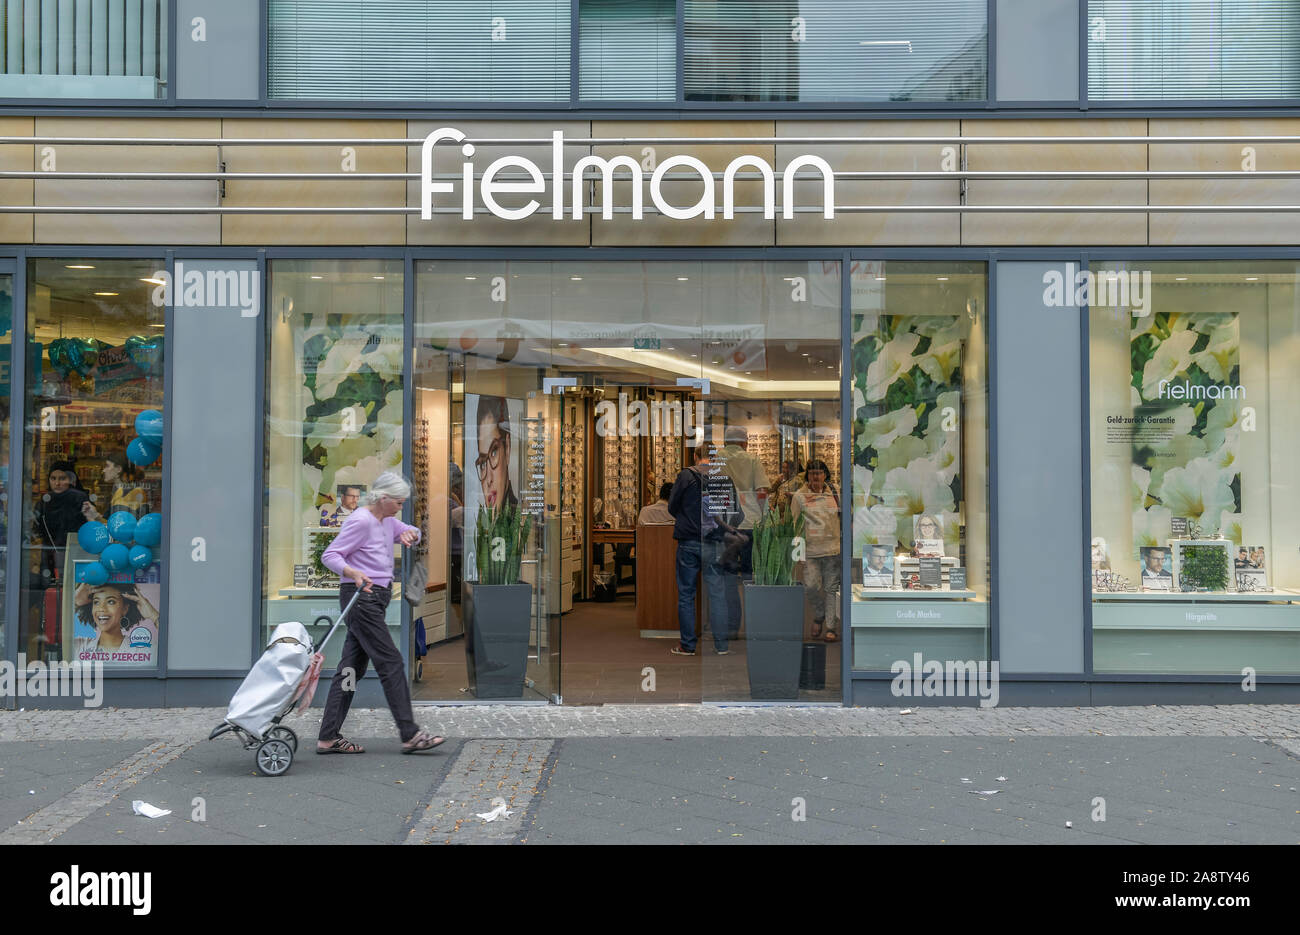 Fielmann, Wilmersdorfer Straße, Charlottenburg, Berlin, Deutschland  Stockfotografie - Alamy